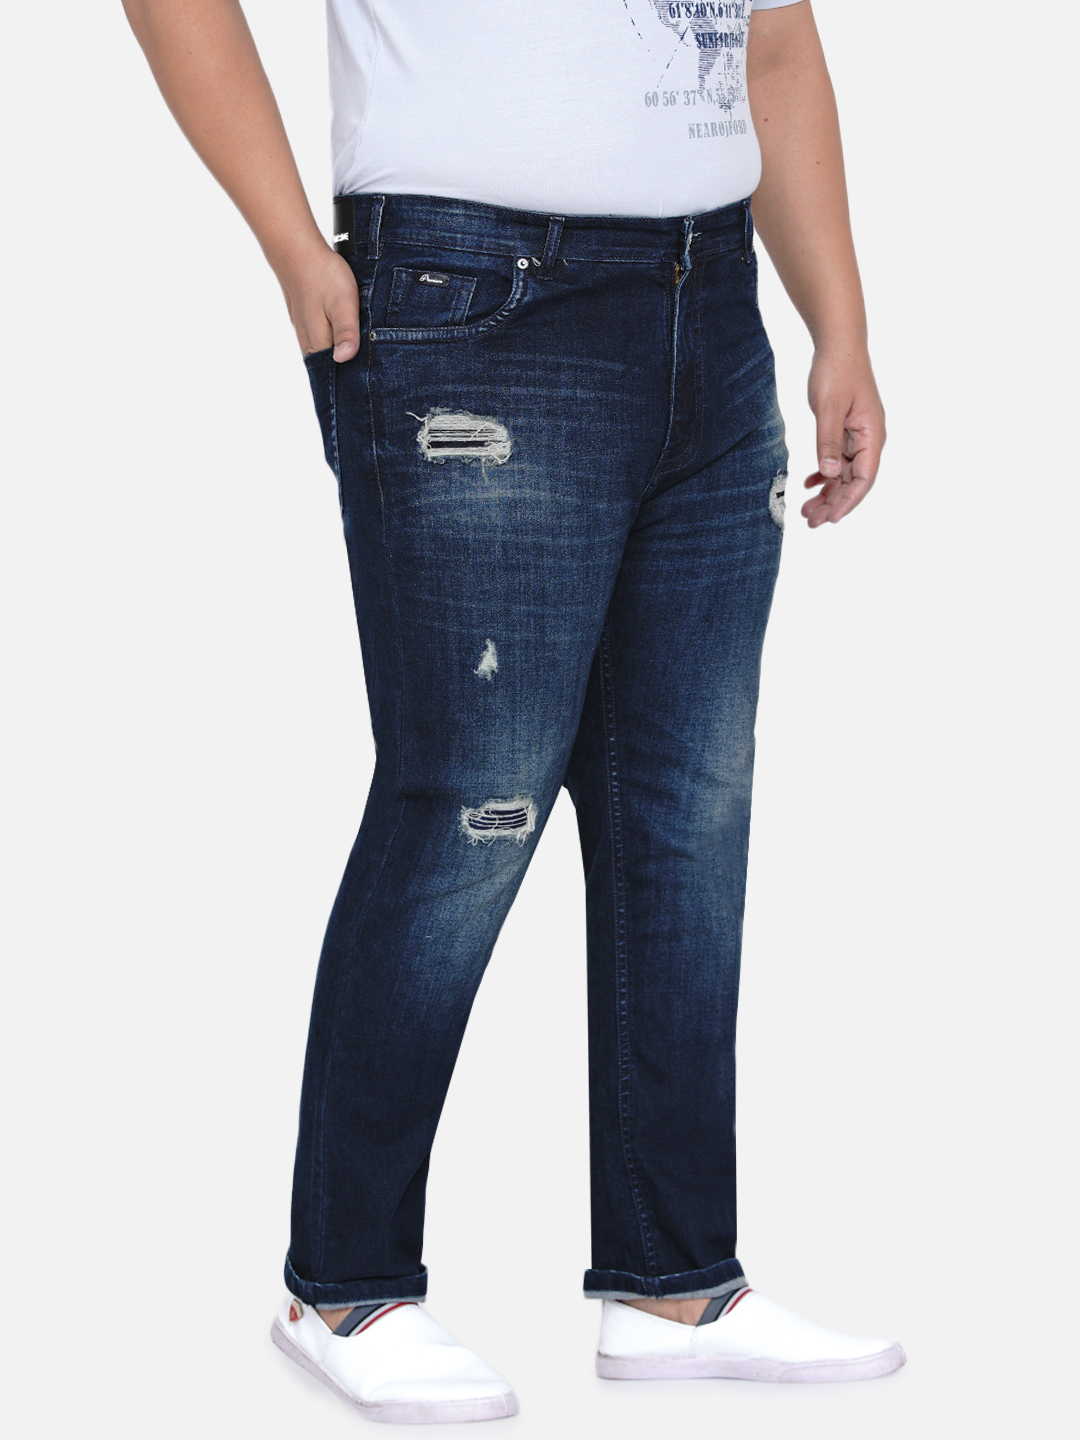 bottomwear/jeans/JPJ6030/jpj6030-5.jpg